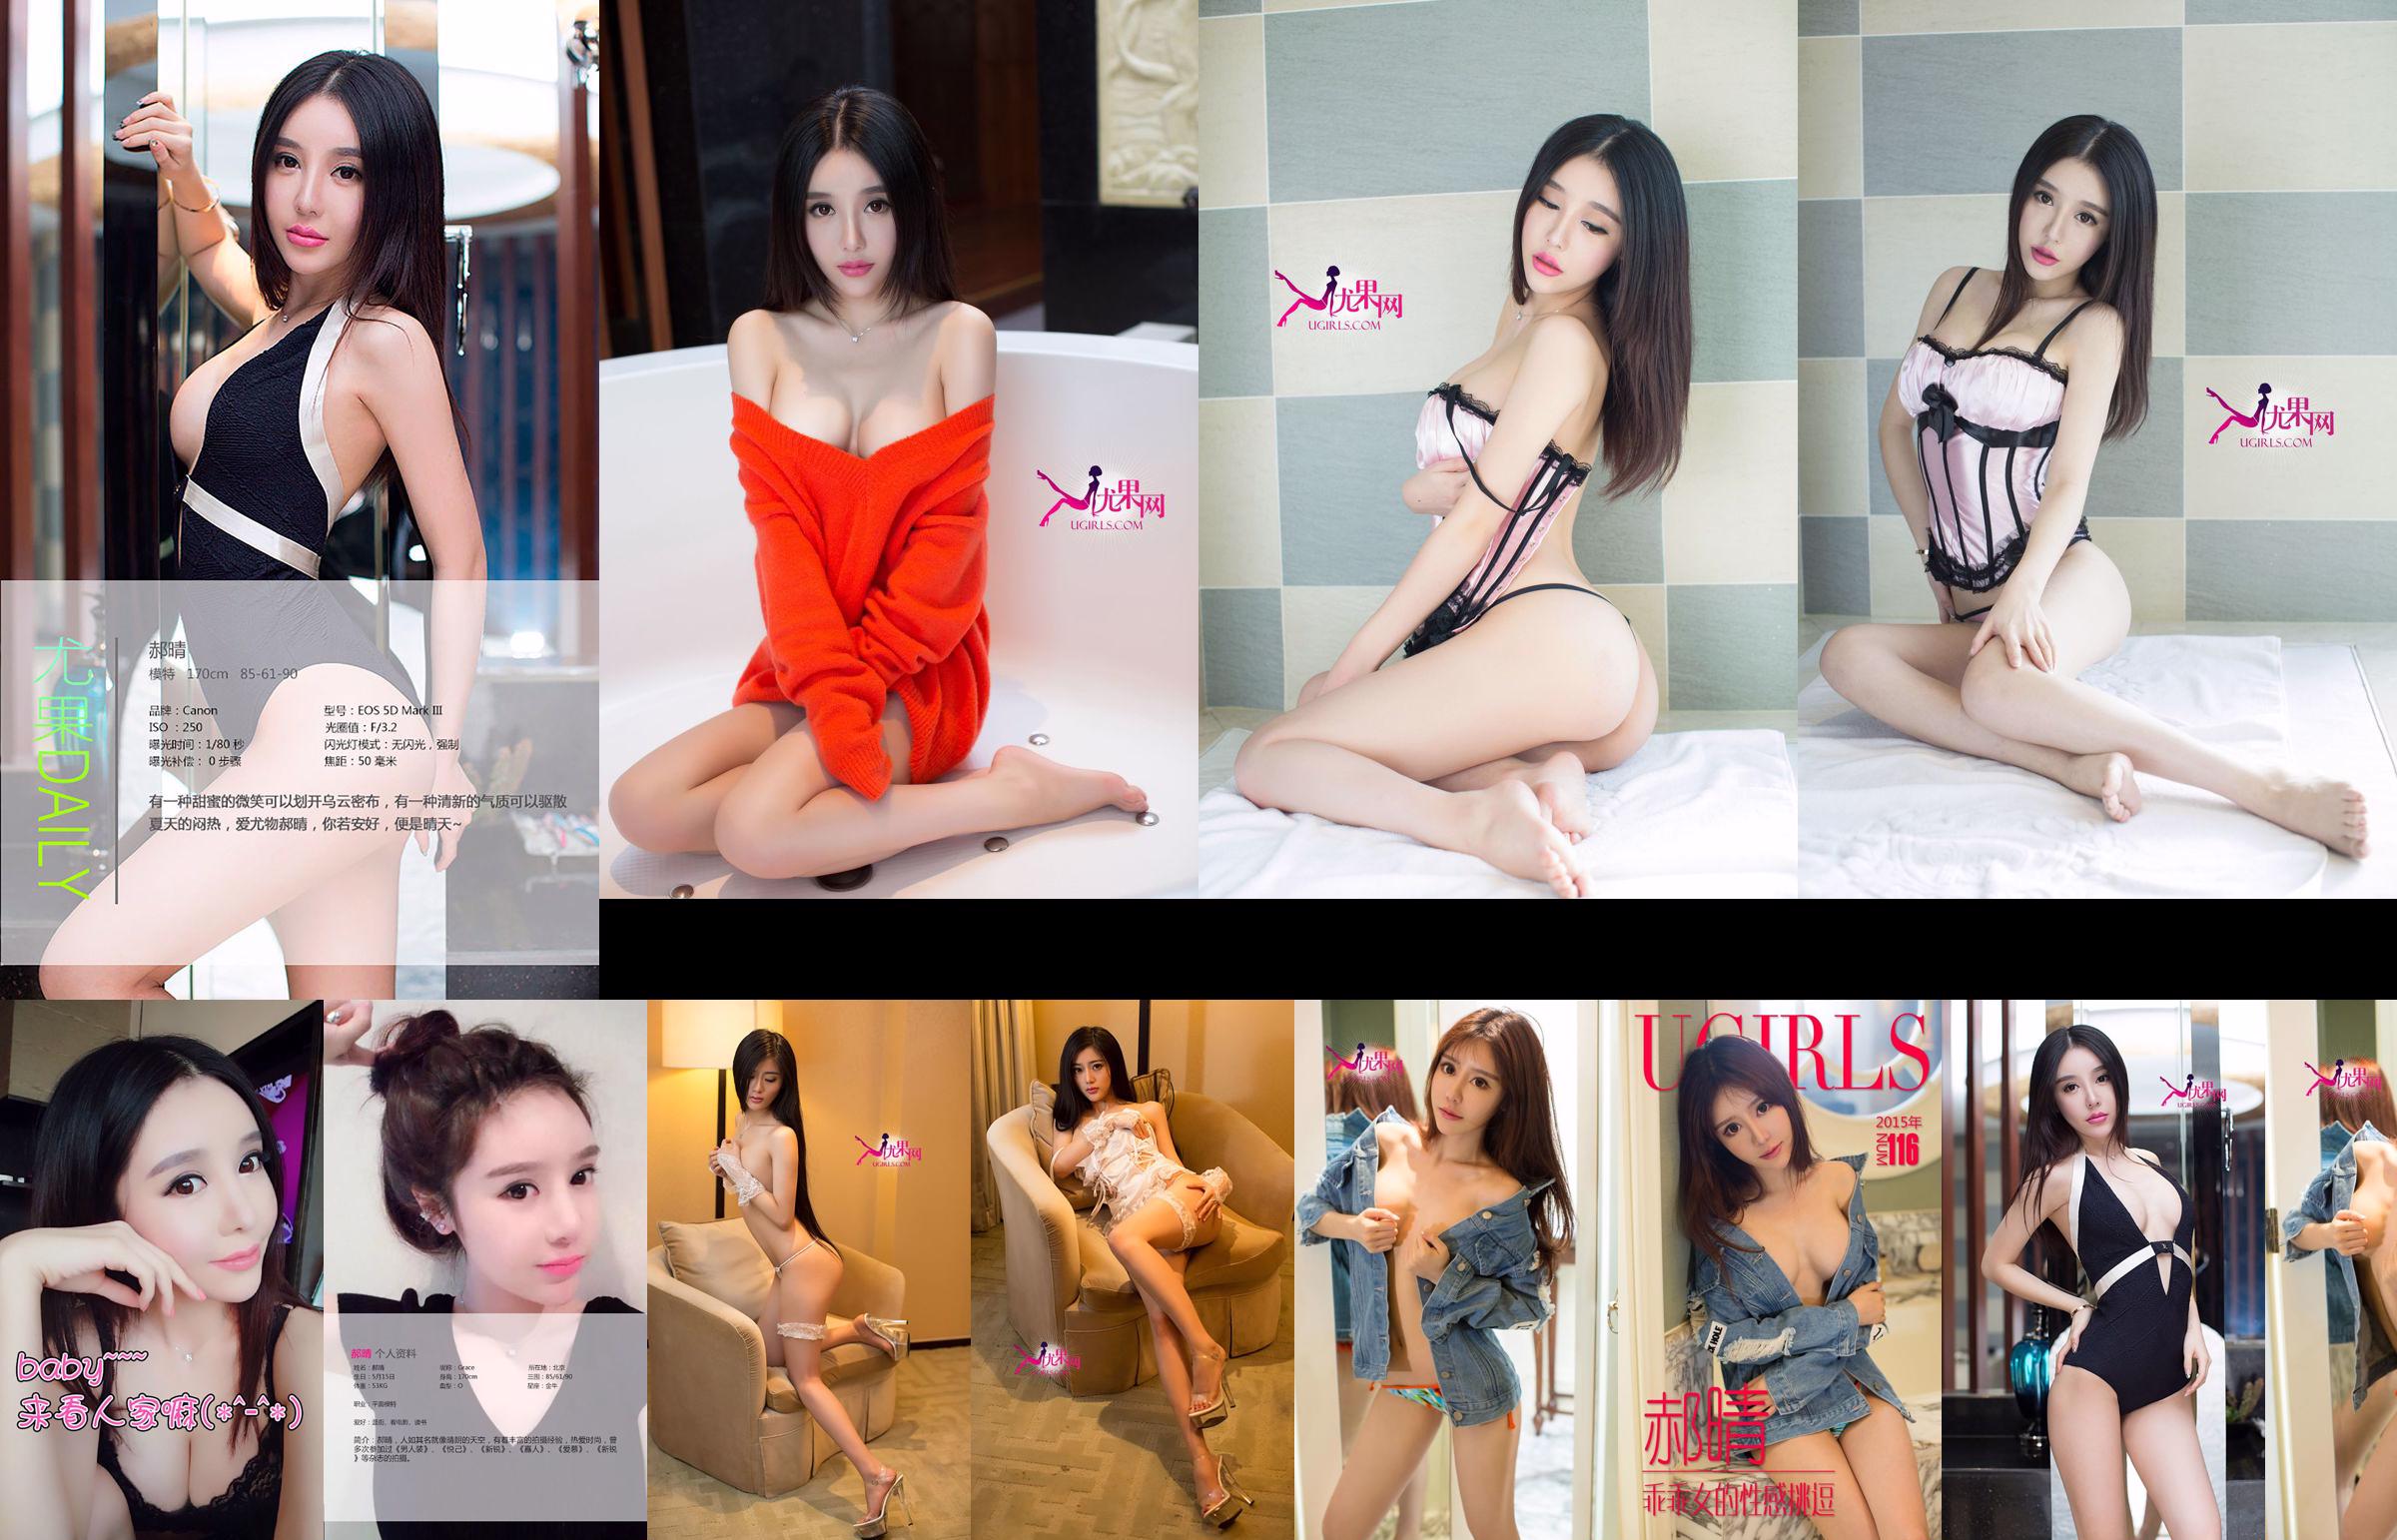 Hao Qing "Die sexy Provokation eines guten Mädchens" [Ugirls] Nr.116 No.5890e2 Seite 1